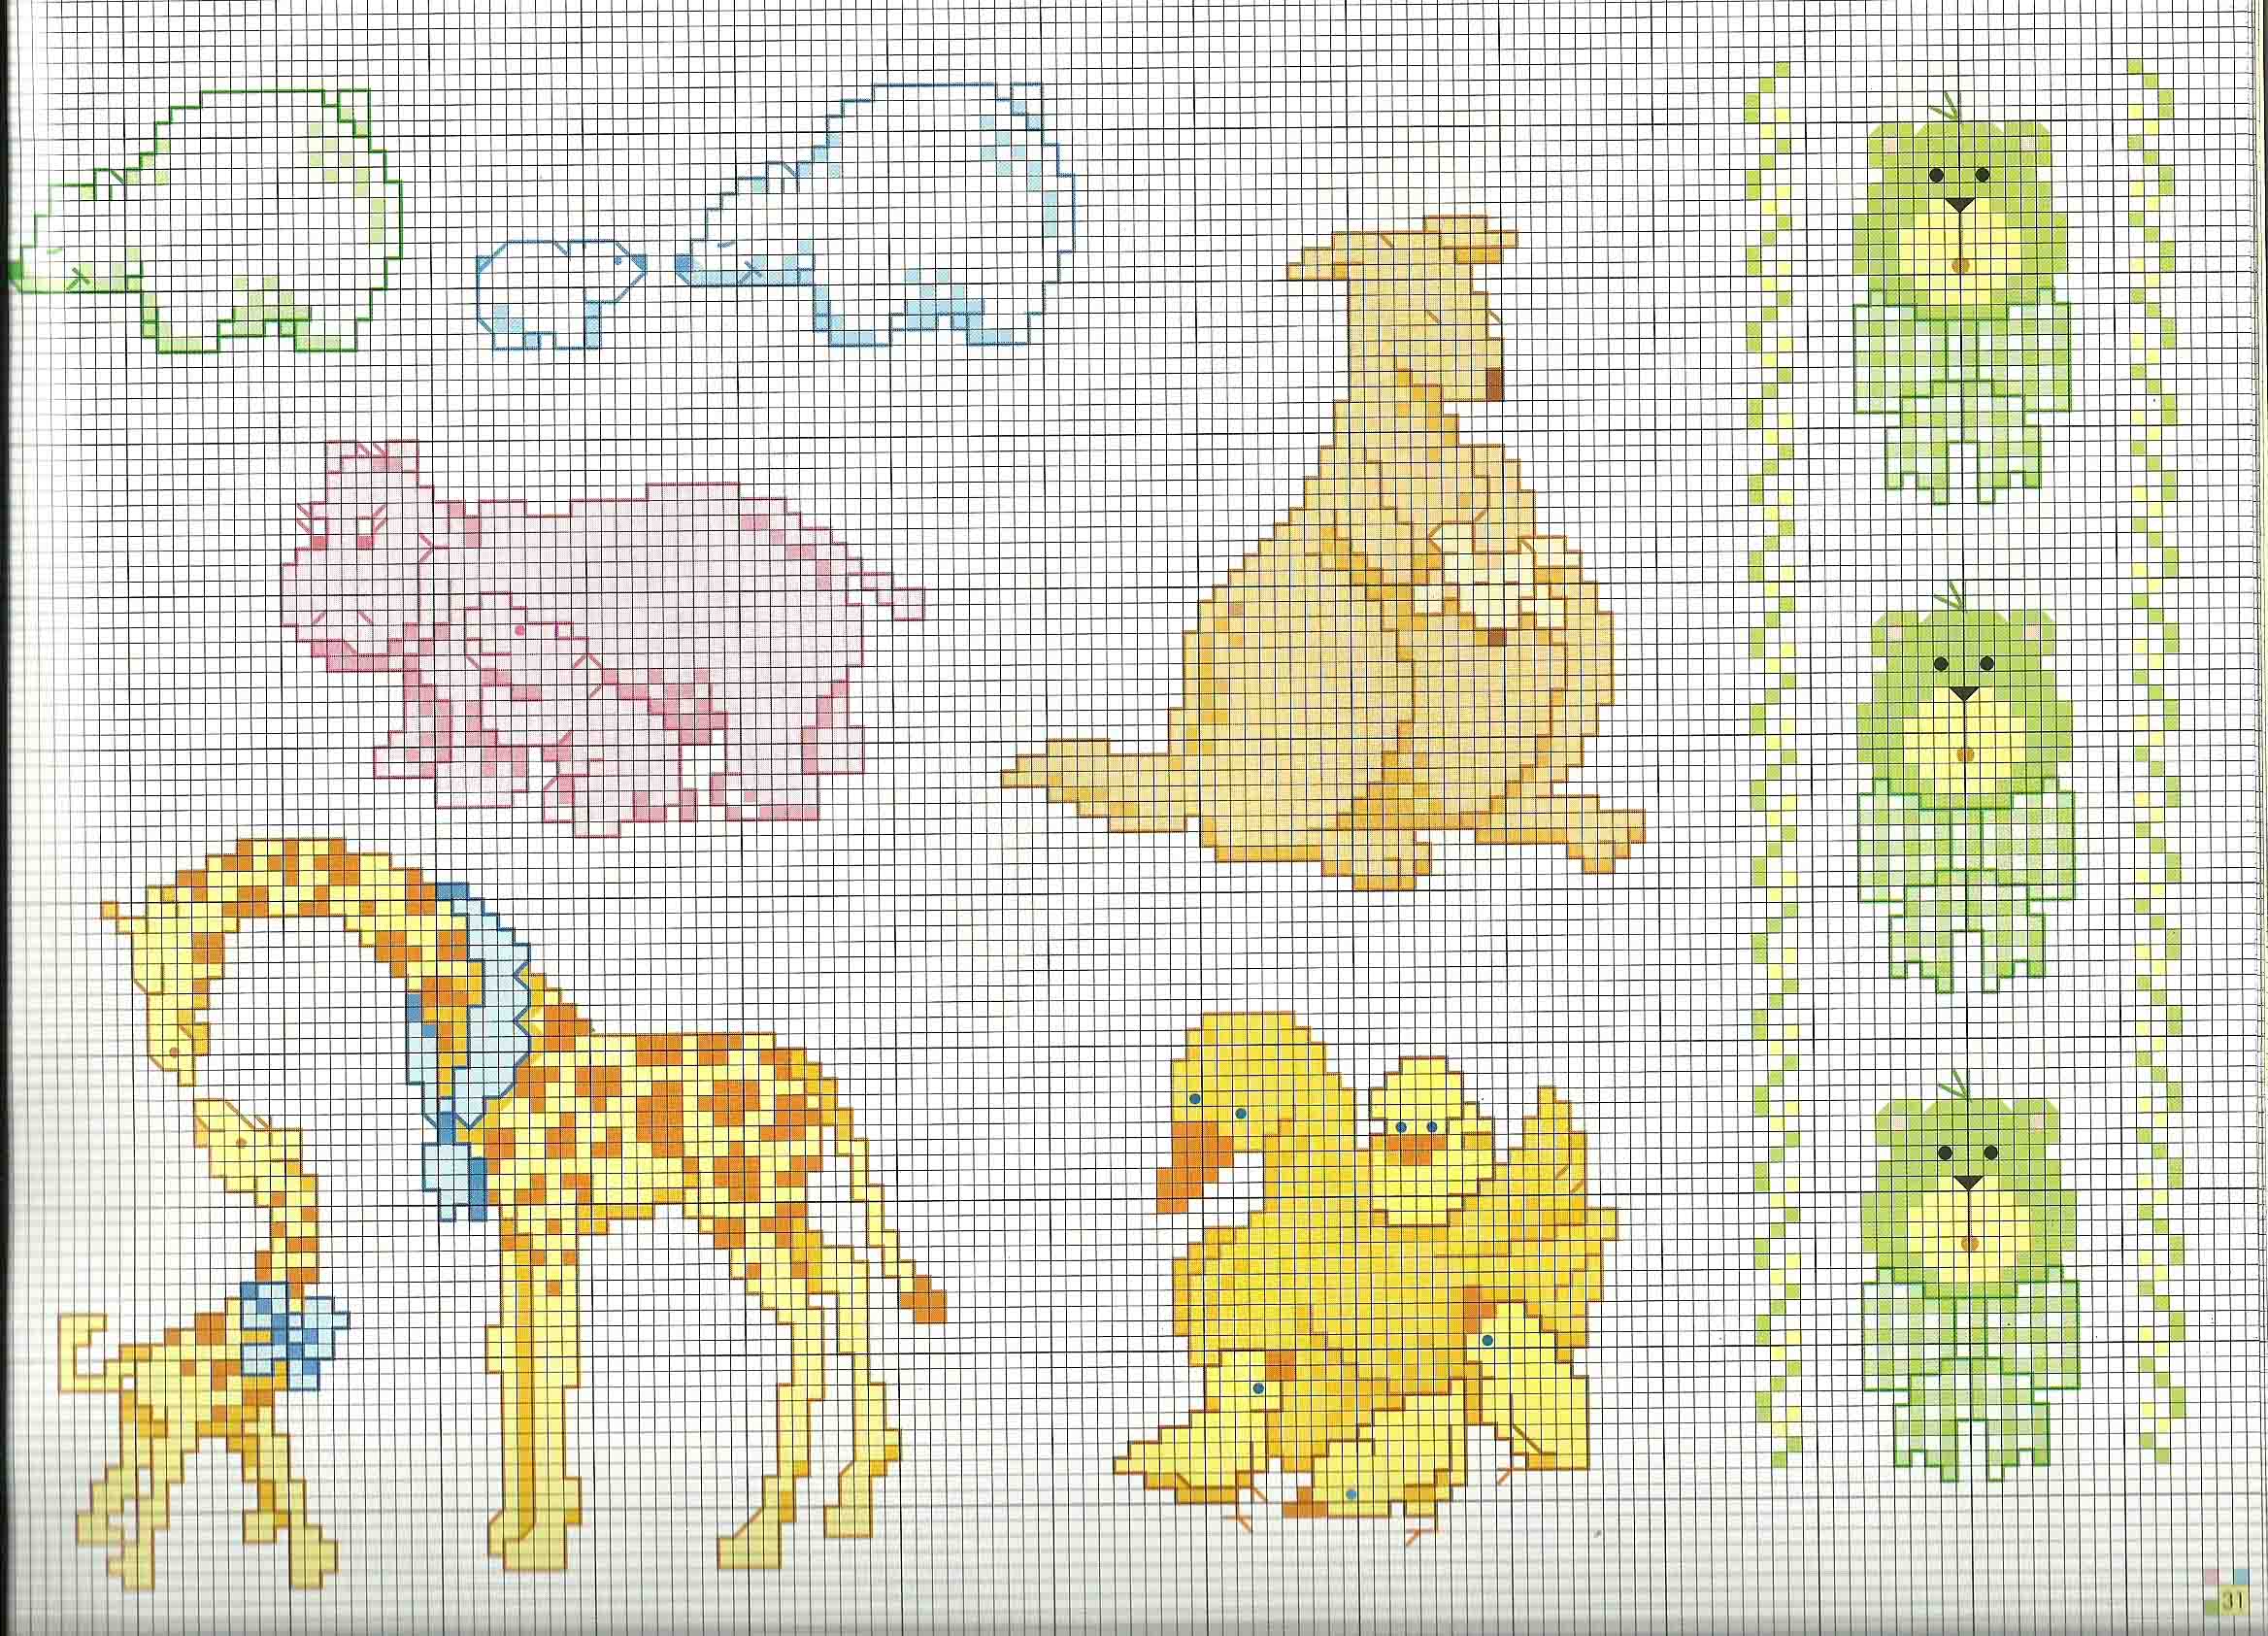 Baby kangaroo baby giraffe and baby hippo cross stitch patterns